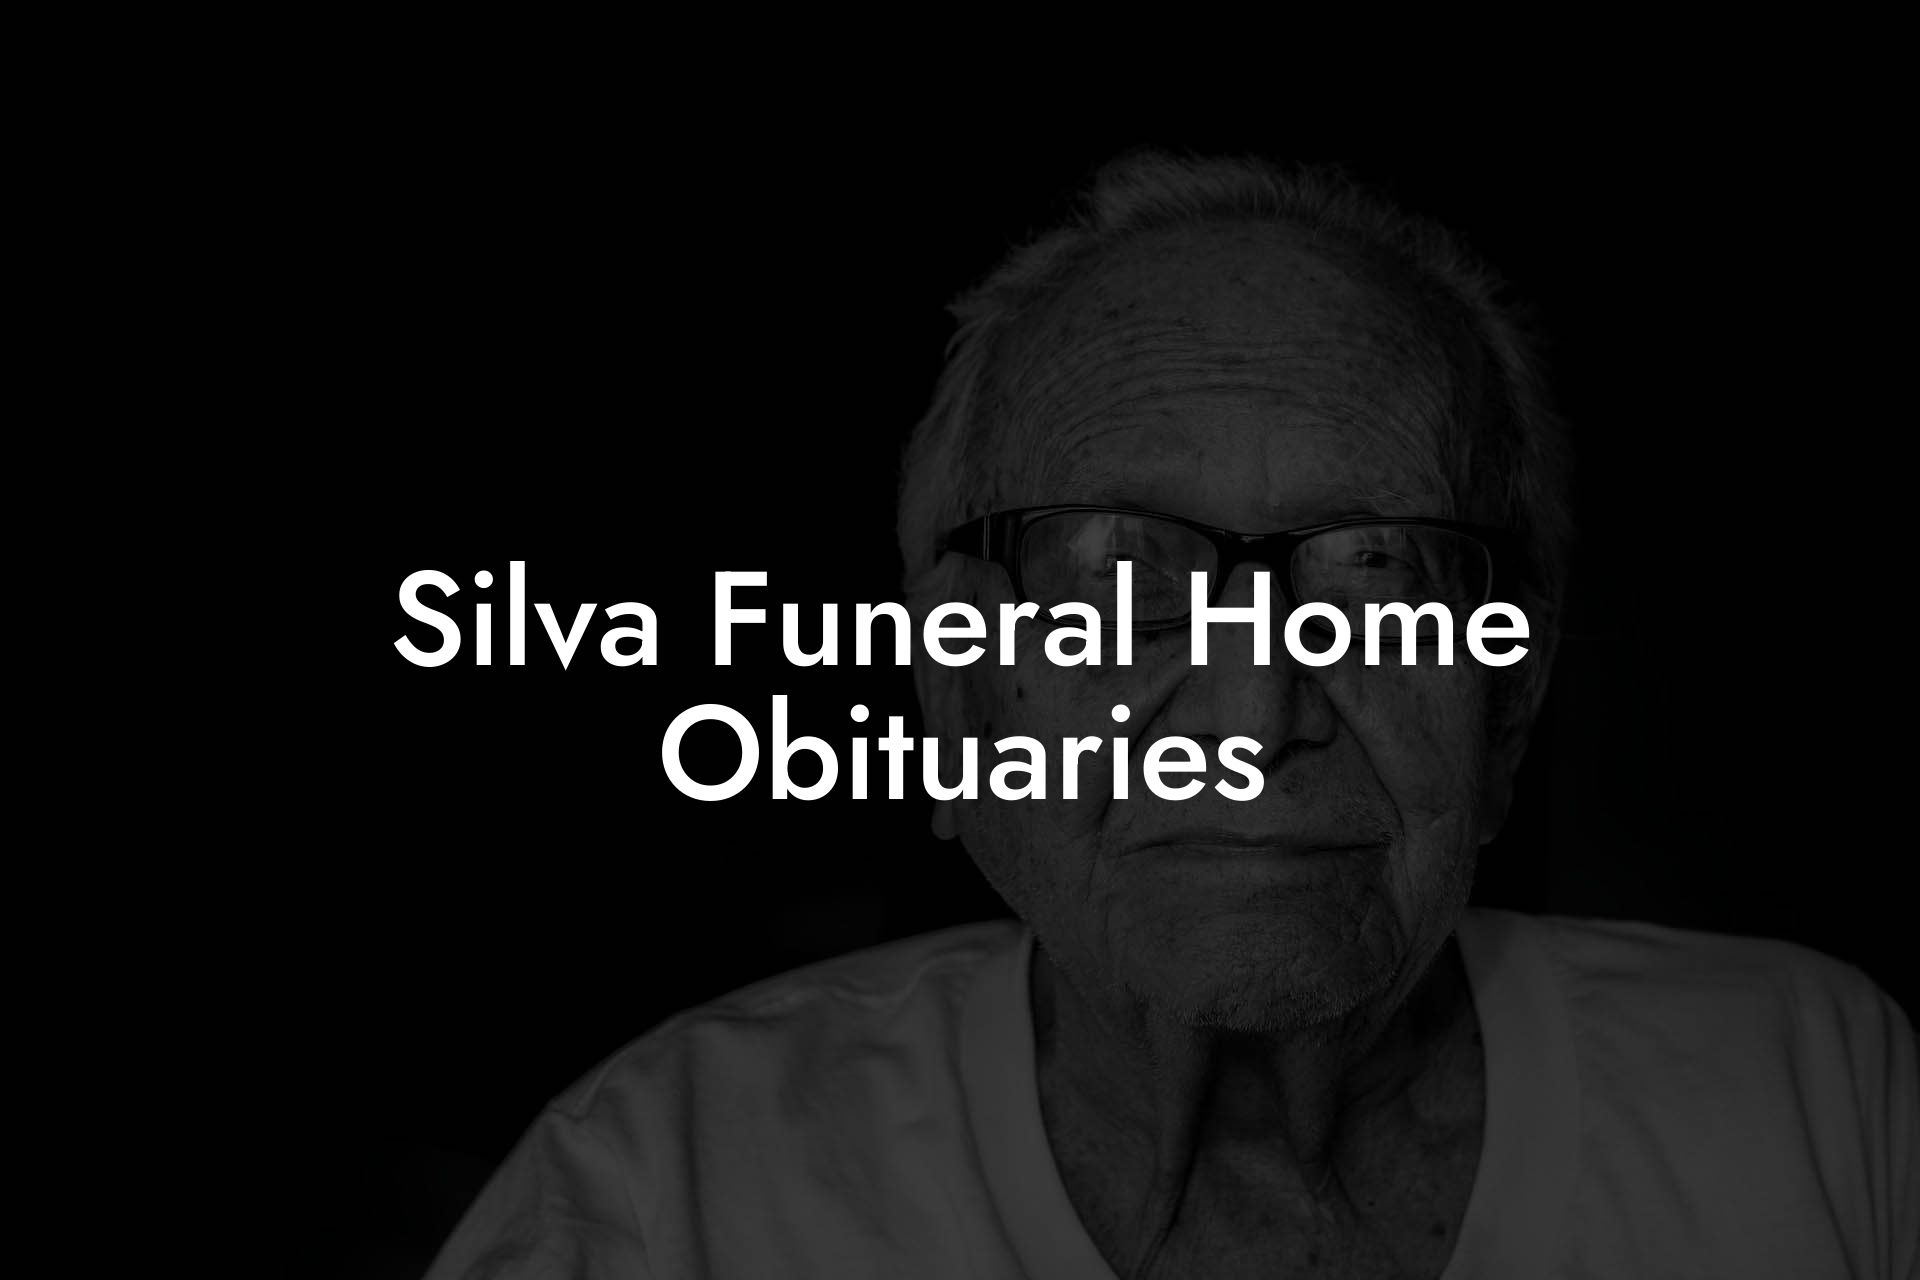 Silva Funeral Home Obituaries